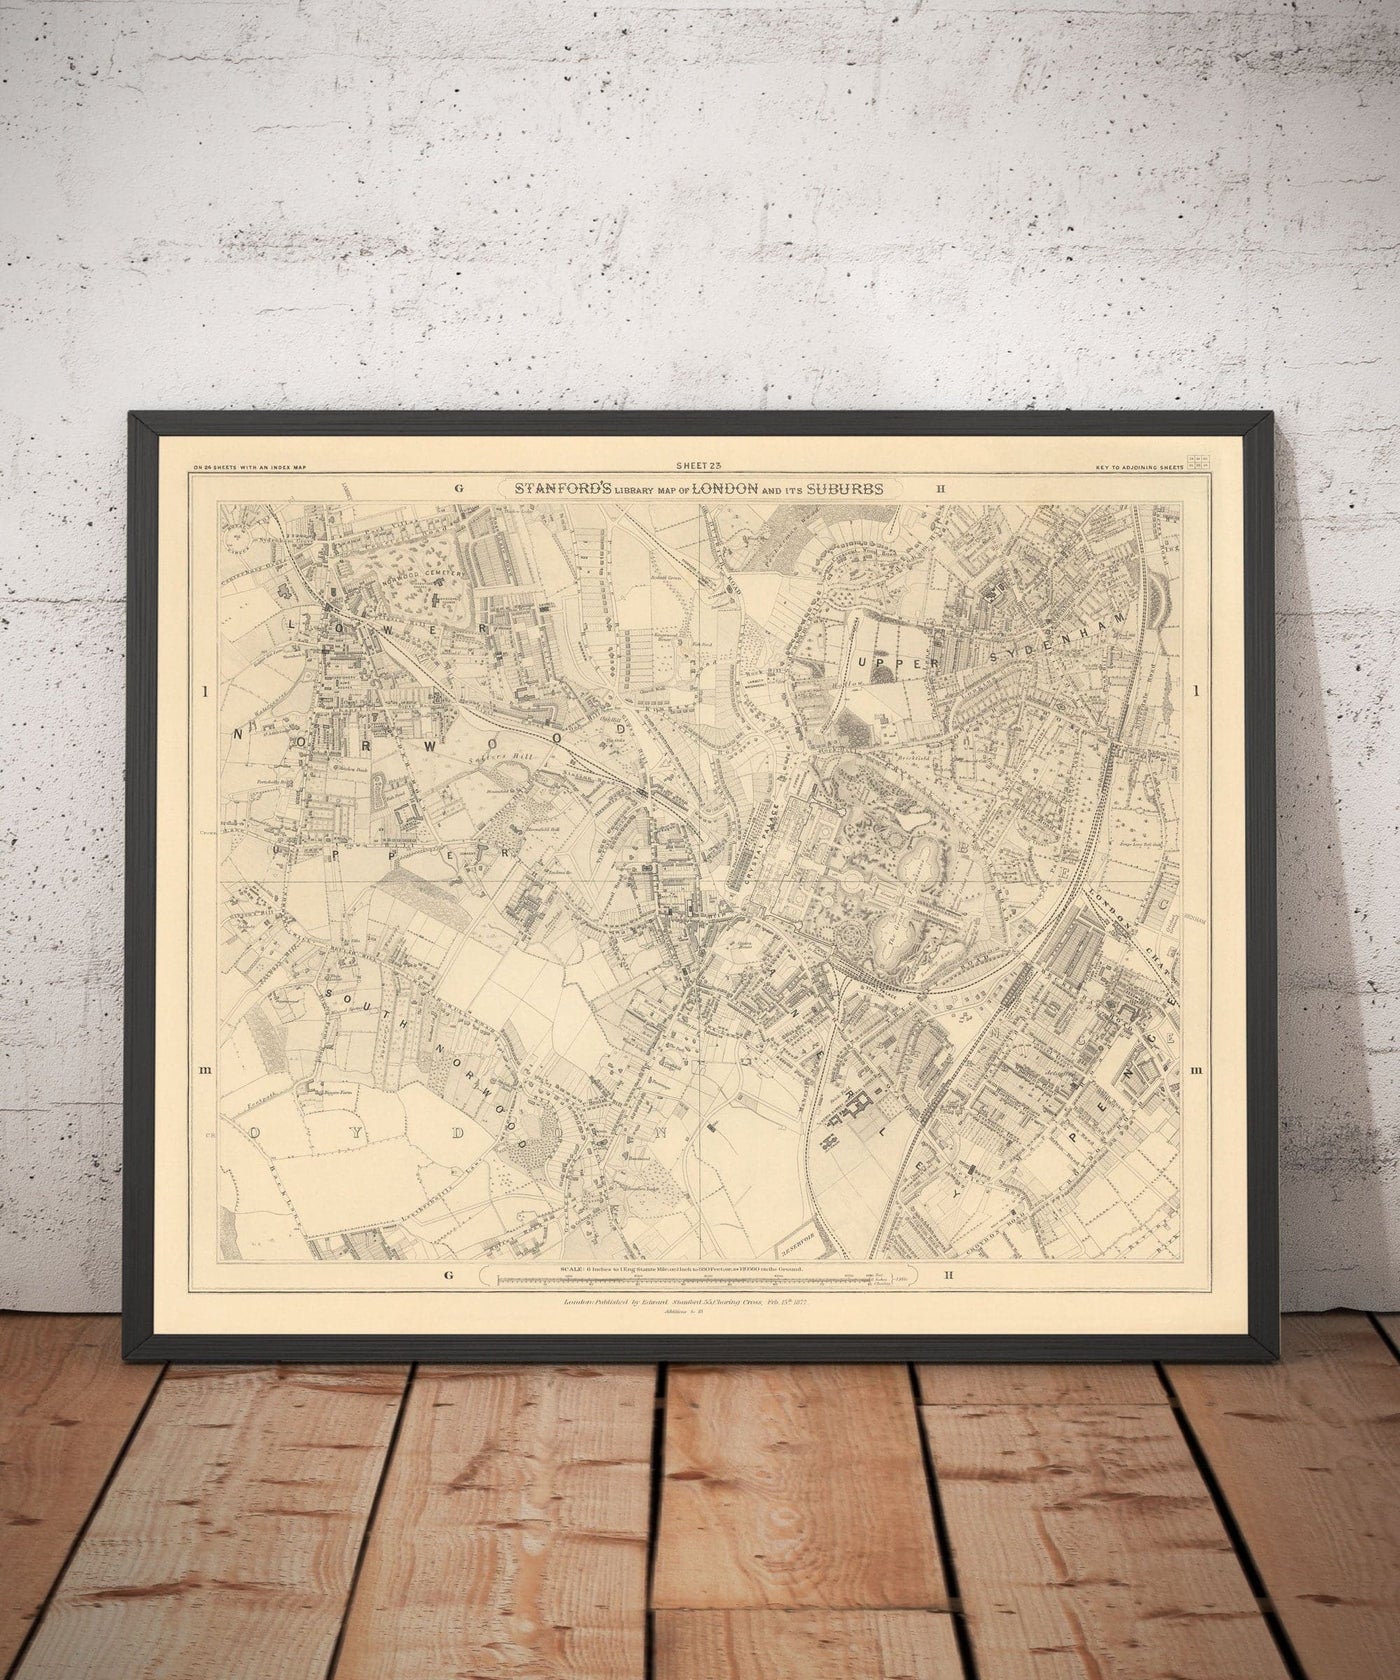 Alte Karte von Südosten London, 1862 von Edward Stanford - Norwood, Kristallpalast, Kempel, Sydenham - SE27, SE19, SE20, SE26